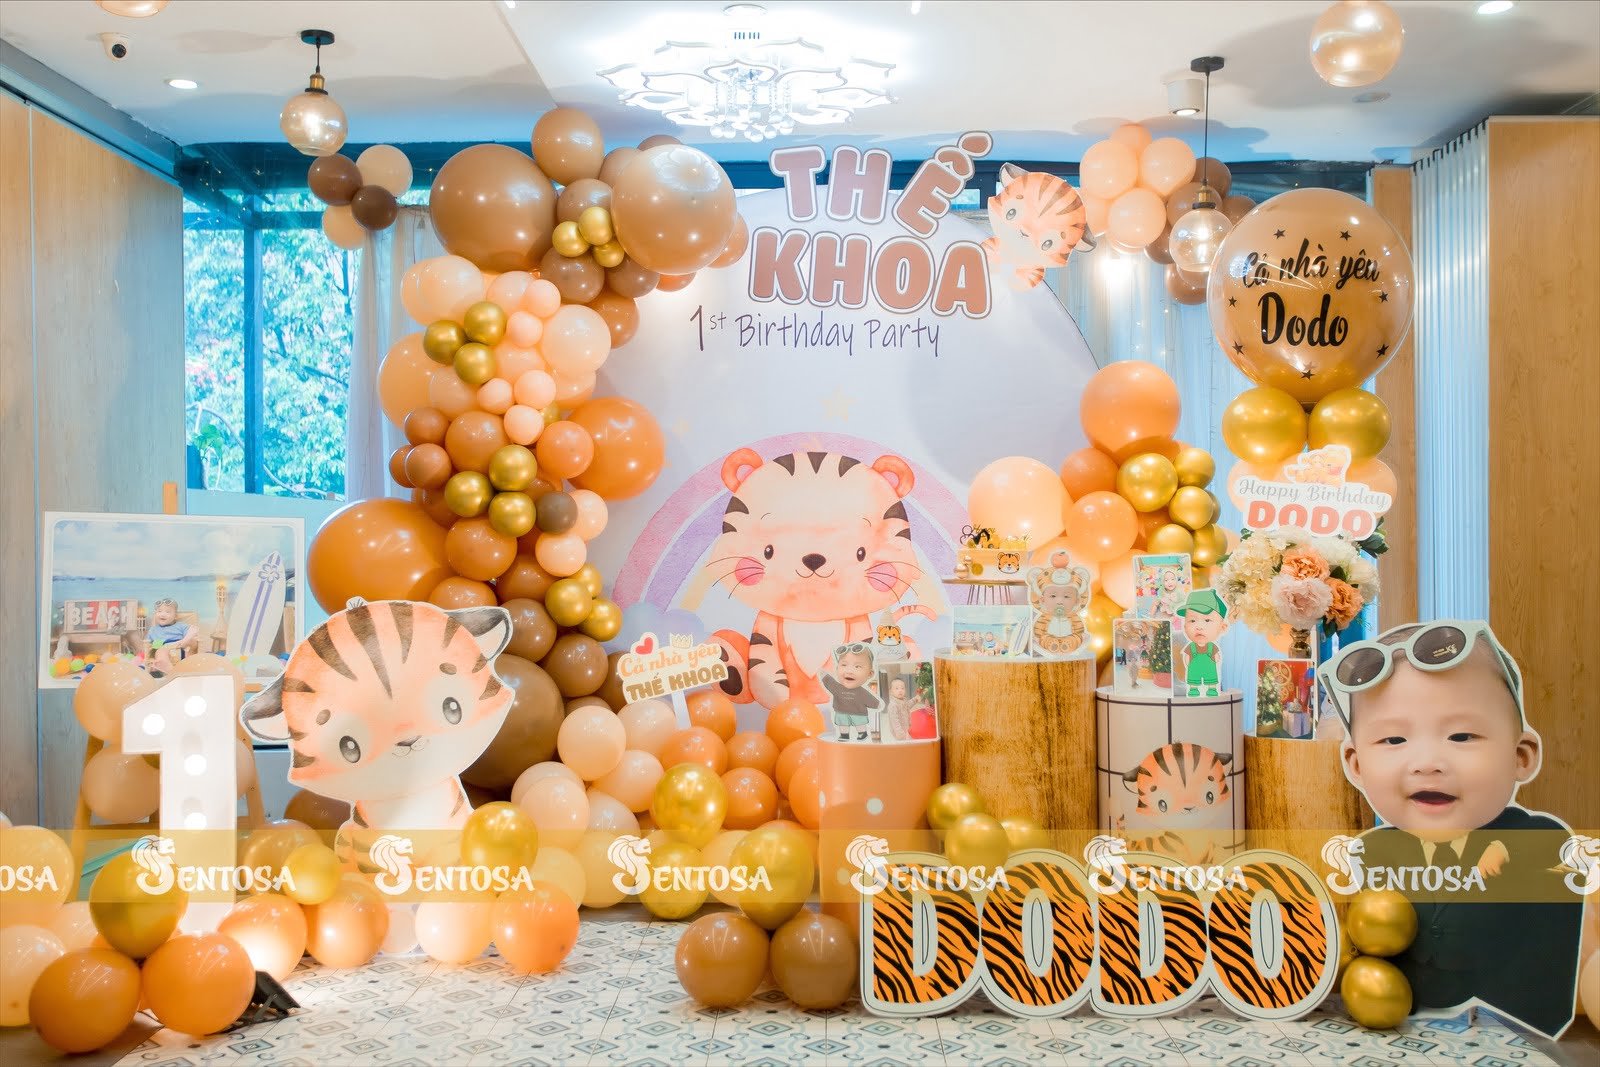 12+ Mẫu trang trí sinh nhật siêu đẹp cho các bé tuổi Hổ - Nhà hàng Sentosa